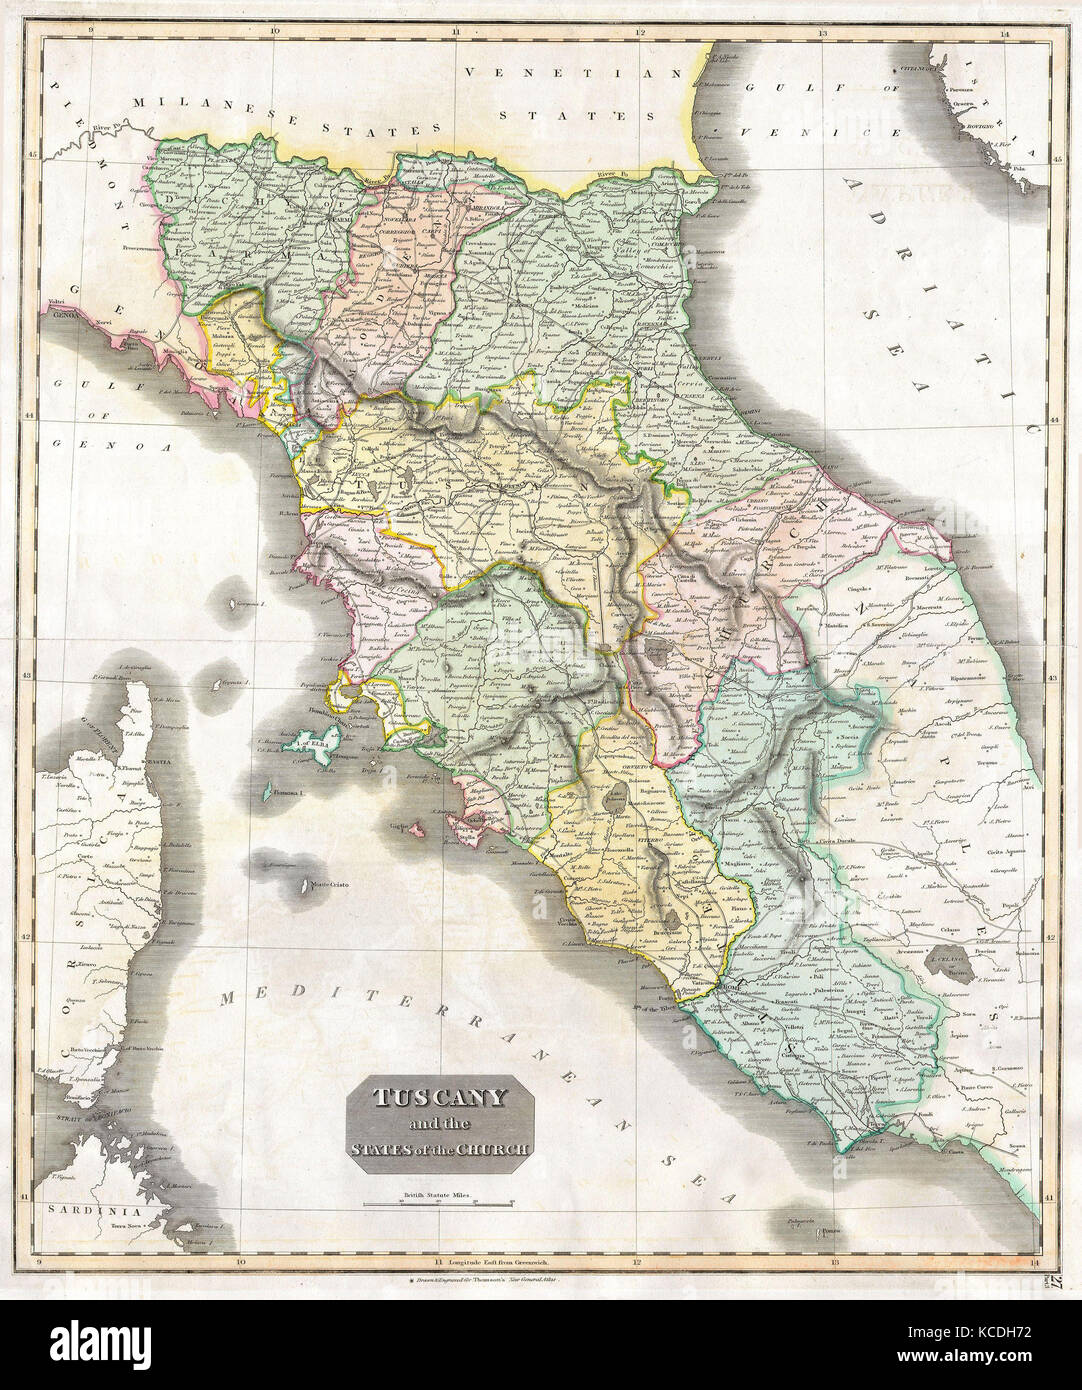 1814, Thomson Site de la Toscane, Florence, Italie, John Thomson, 1777 - 1840, était un cartographe écossais d'Édimbourg, Royaume-Uni Banque D'Images